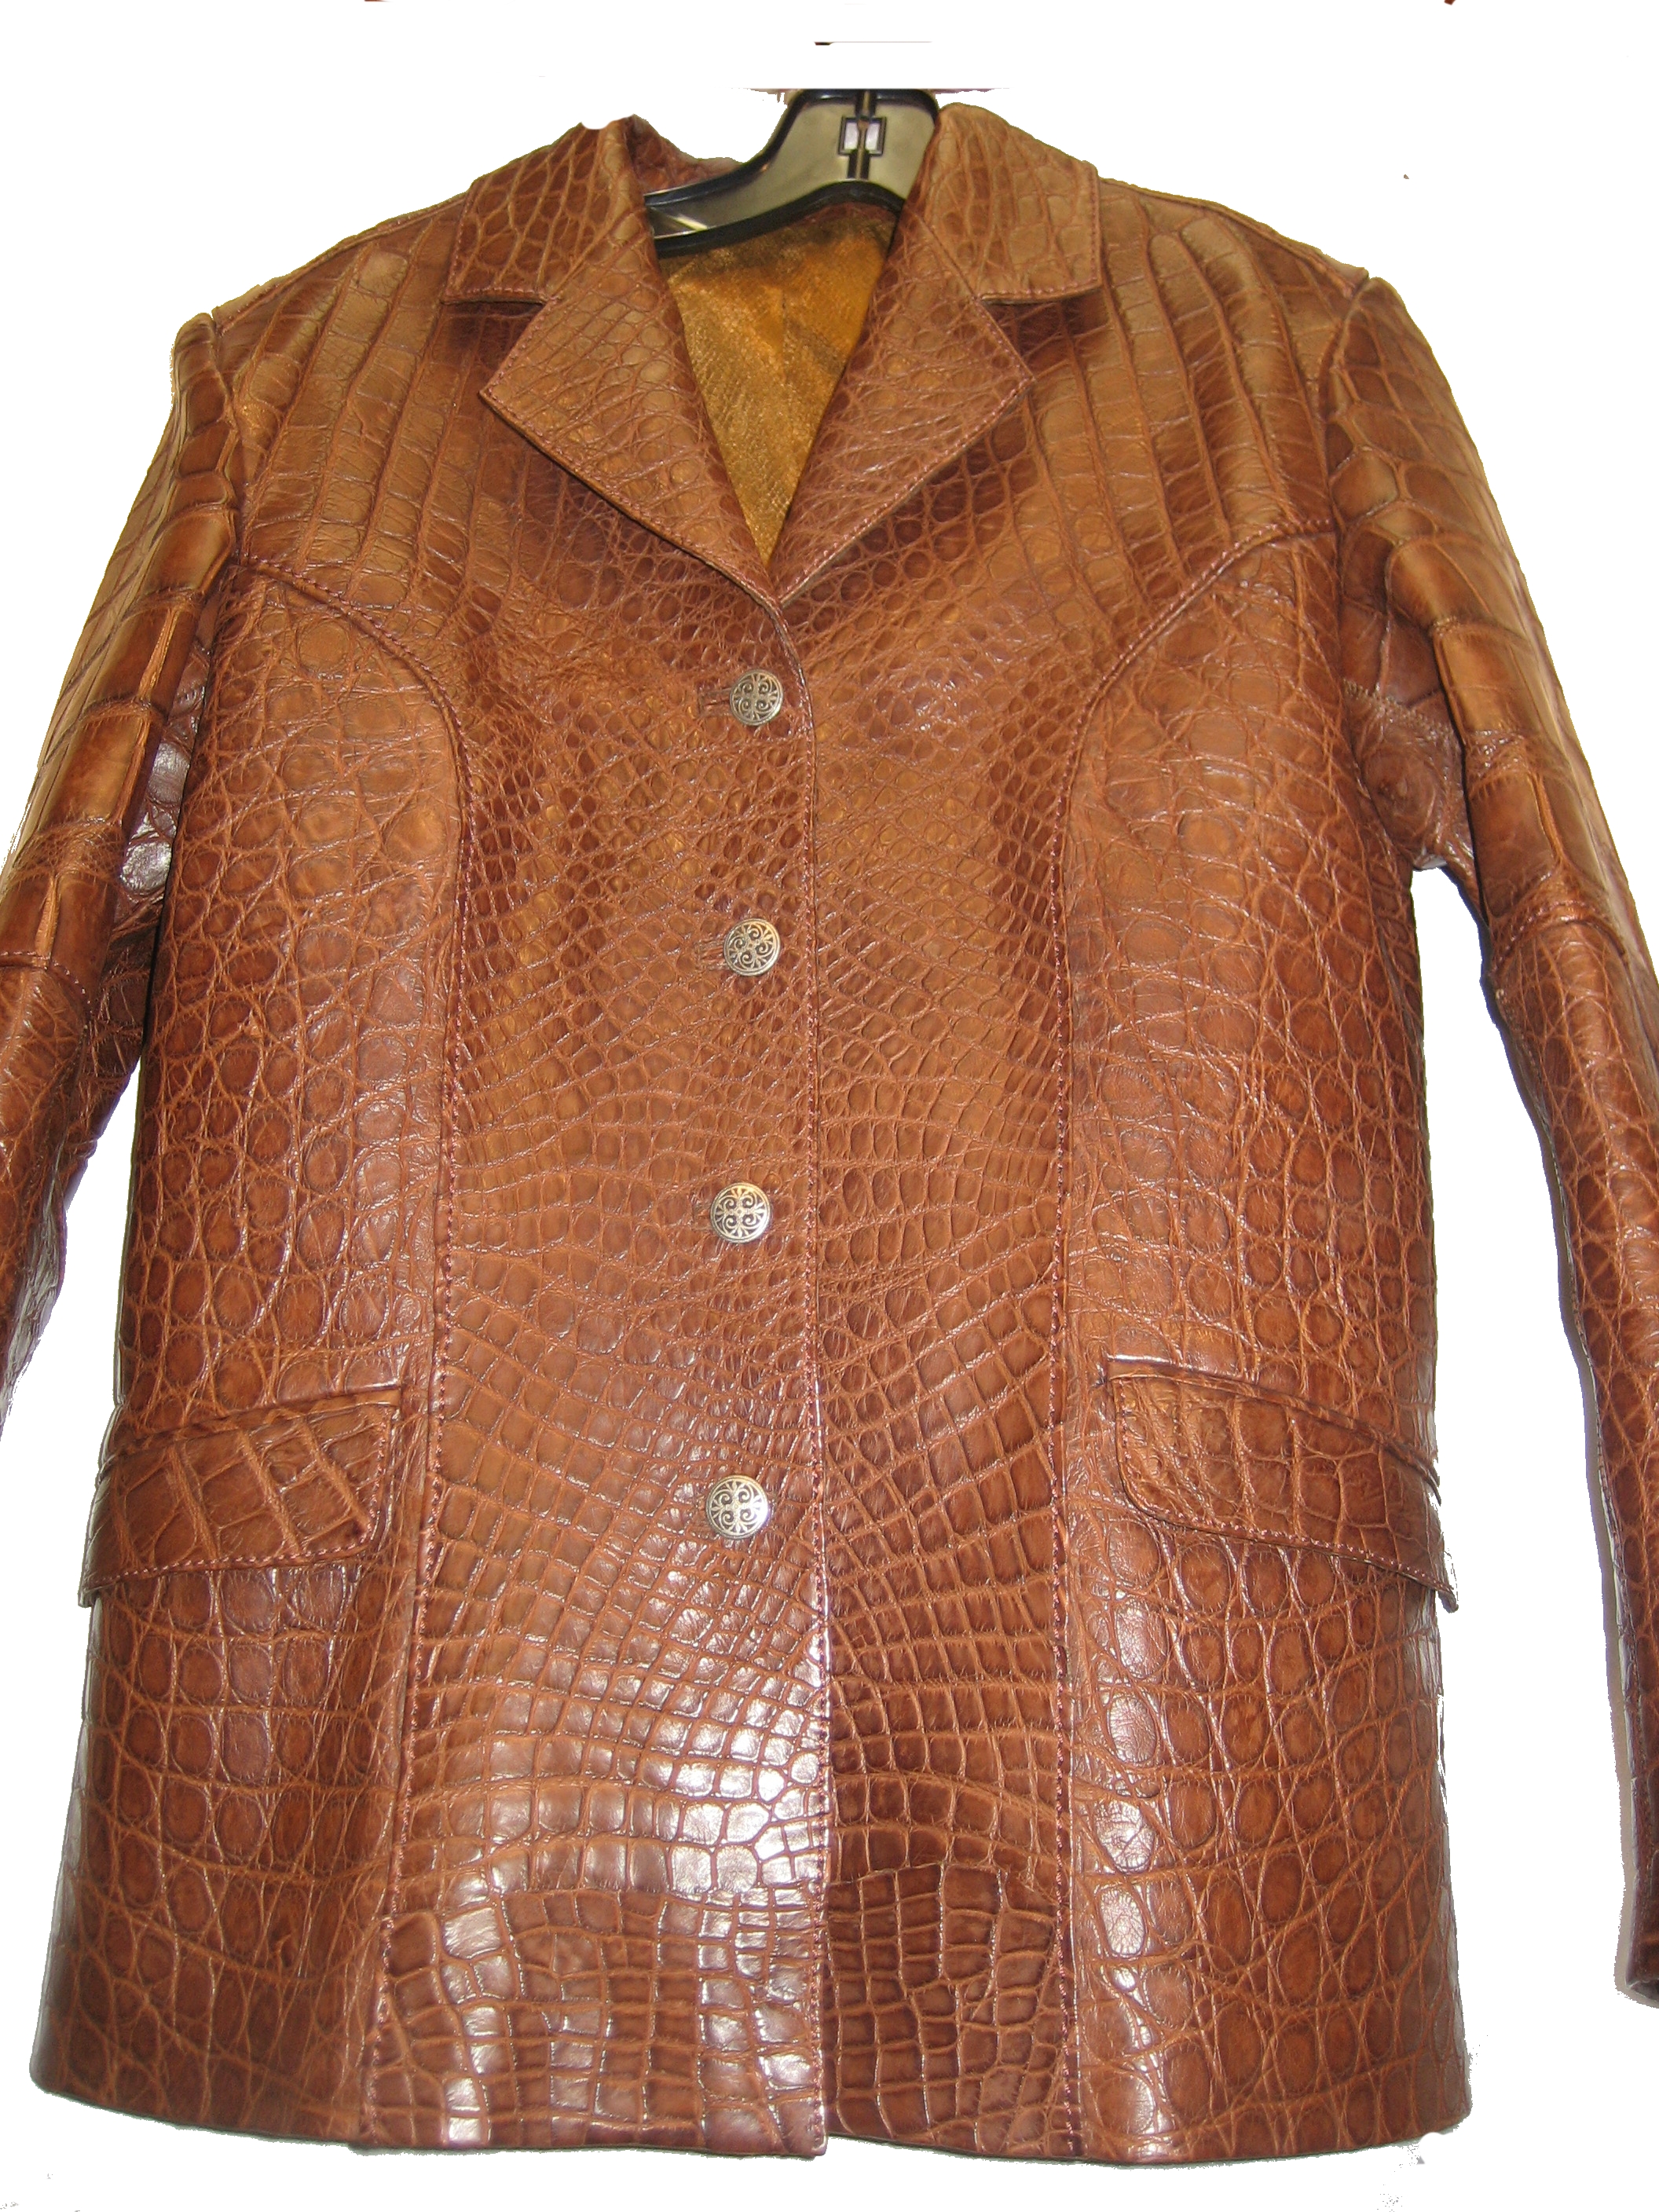 Crocodile jacket for men, luxury alligator jacket for men